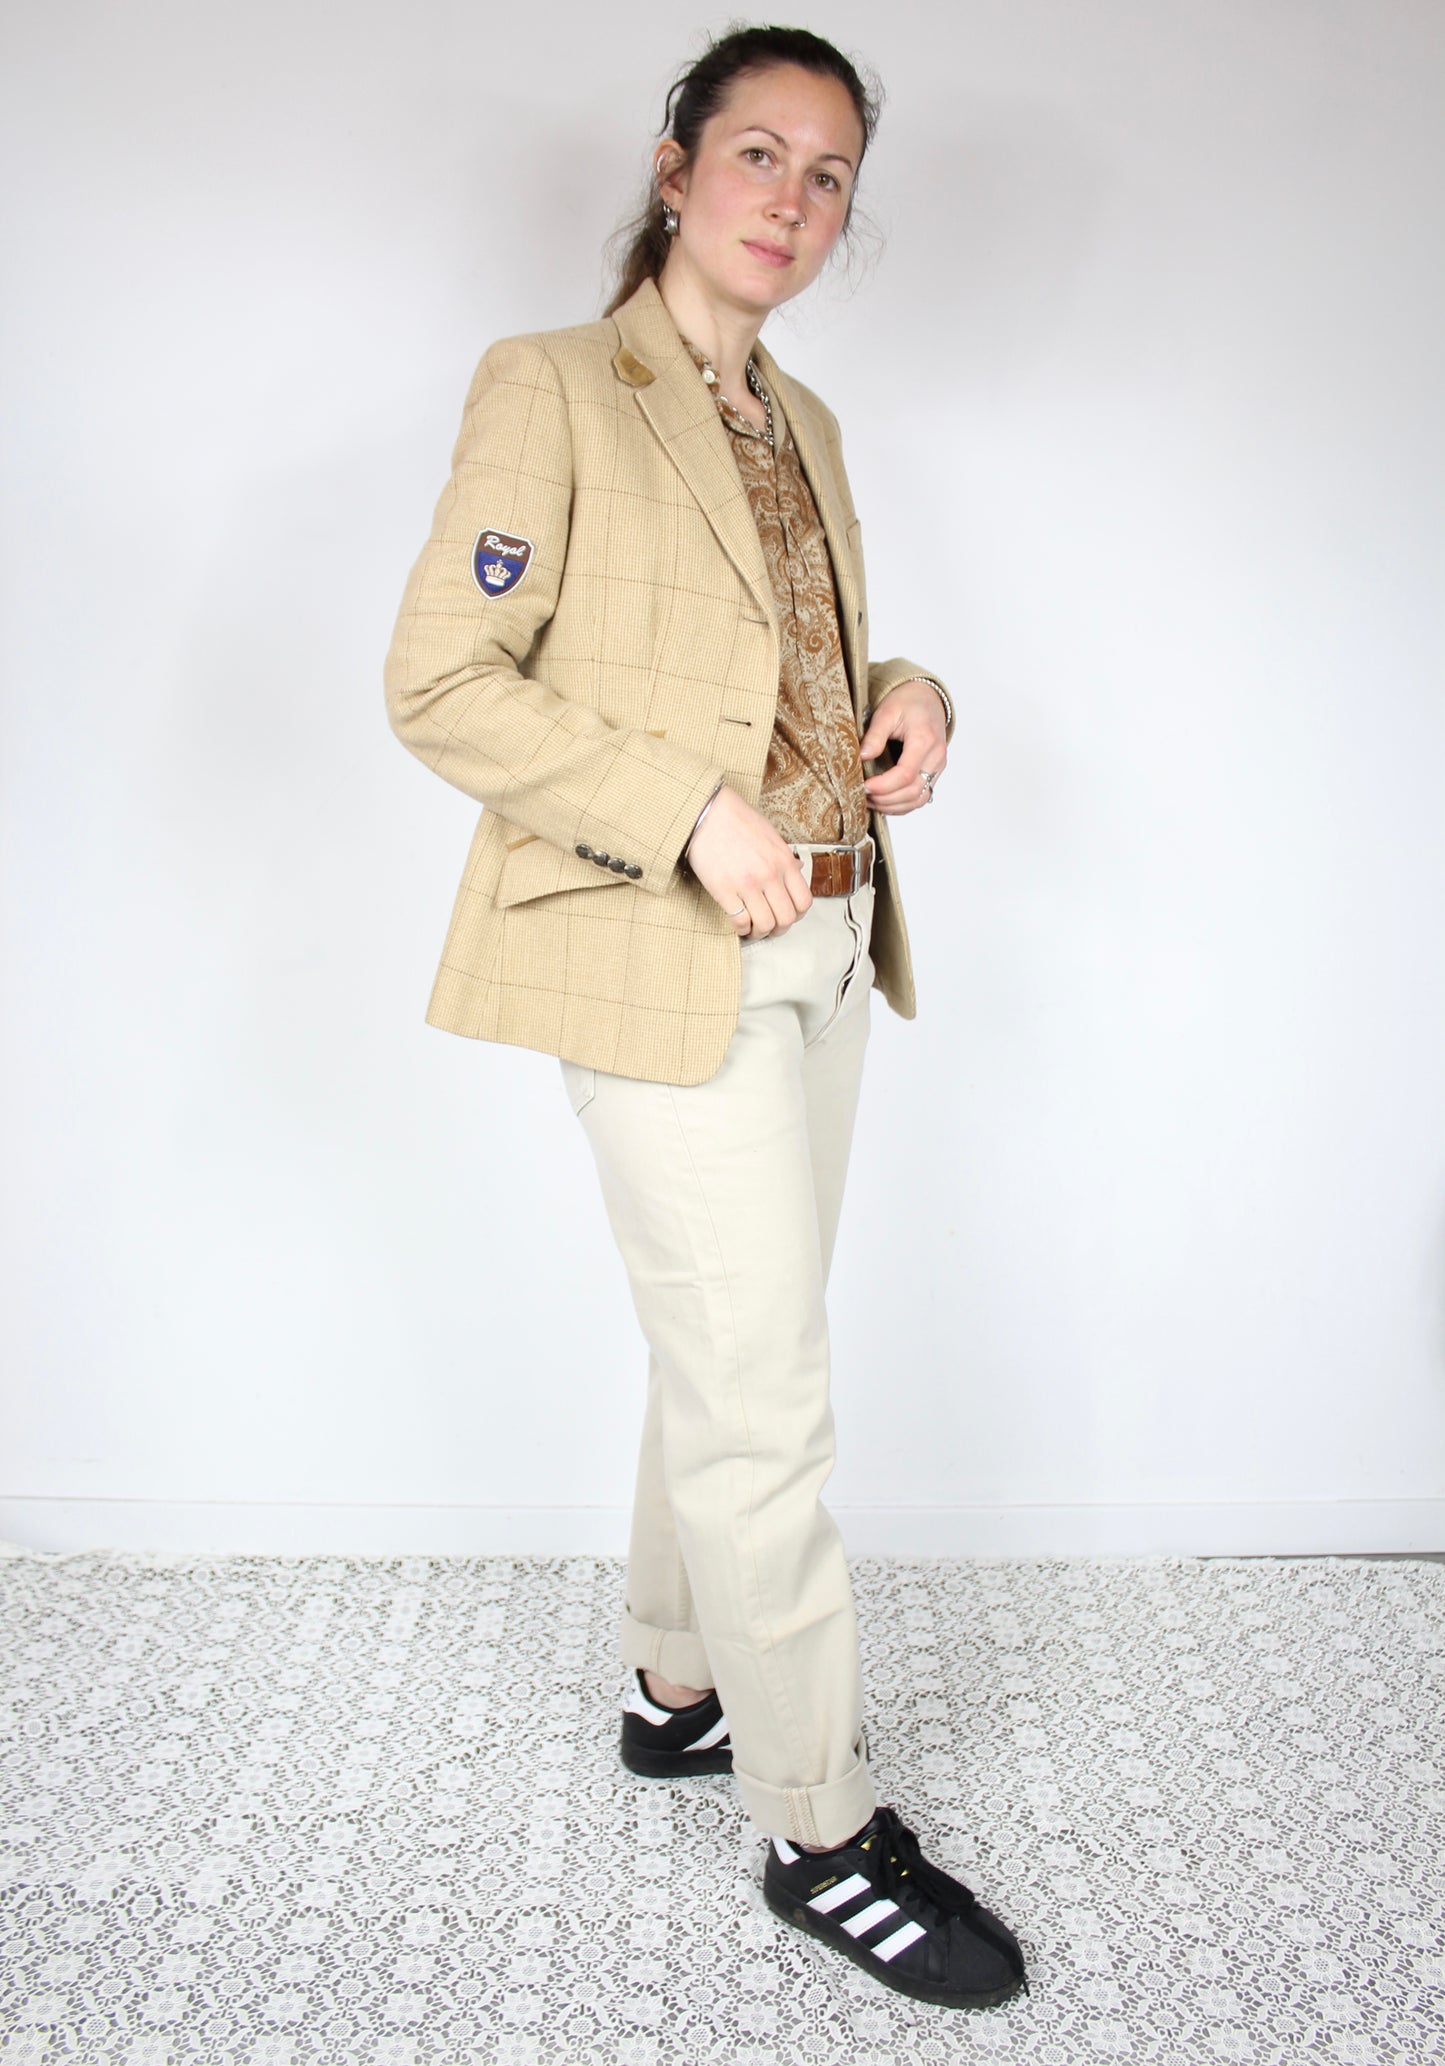 Veste Ralph Lauren beige laine taille 38 boutons chevaux